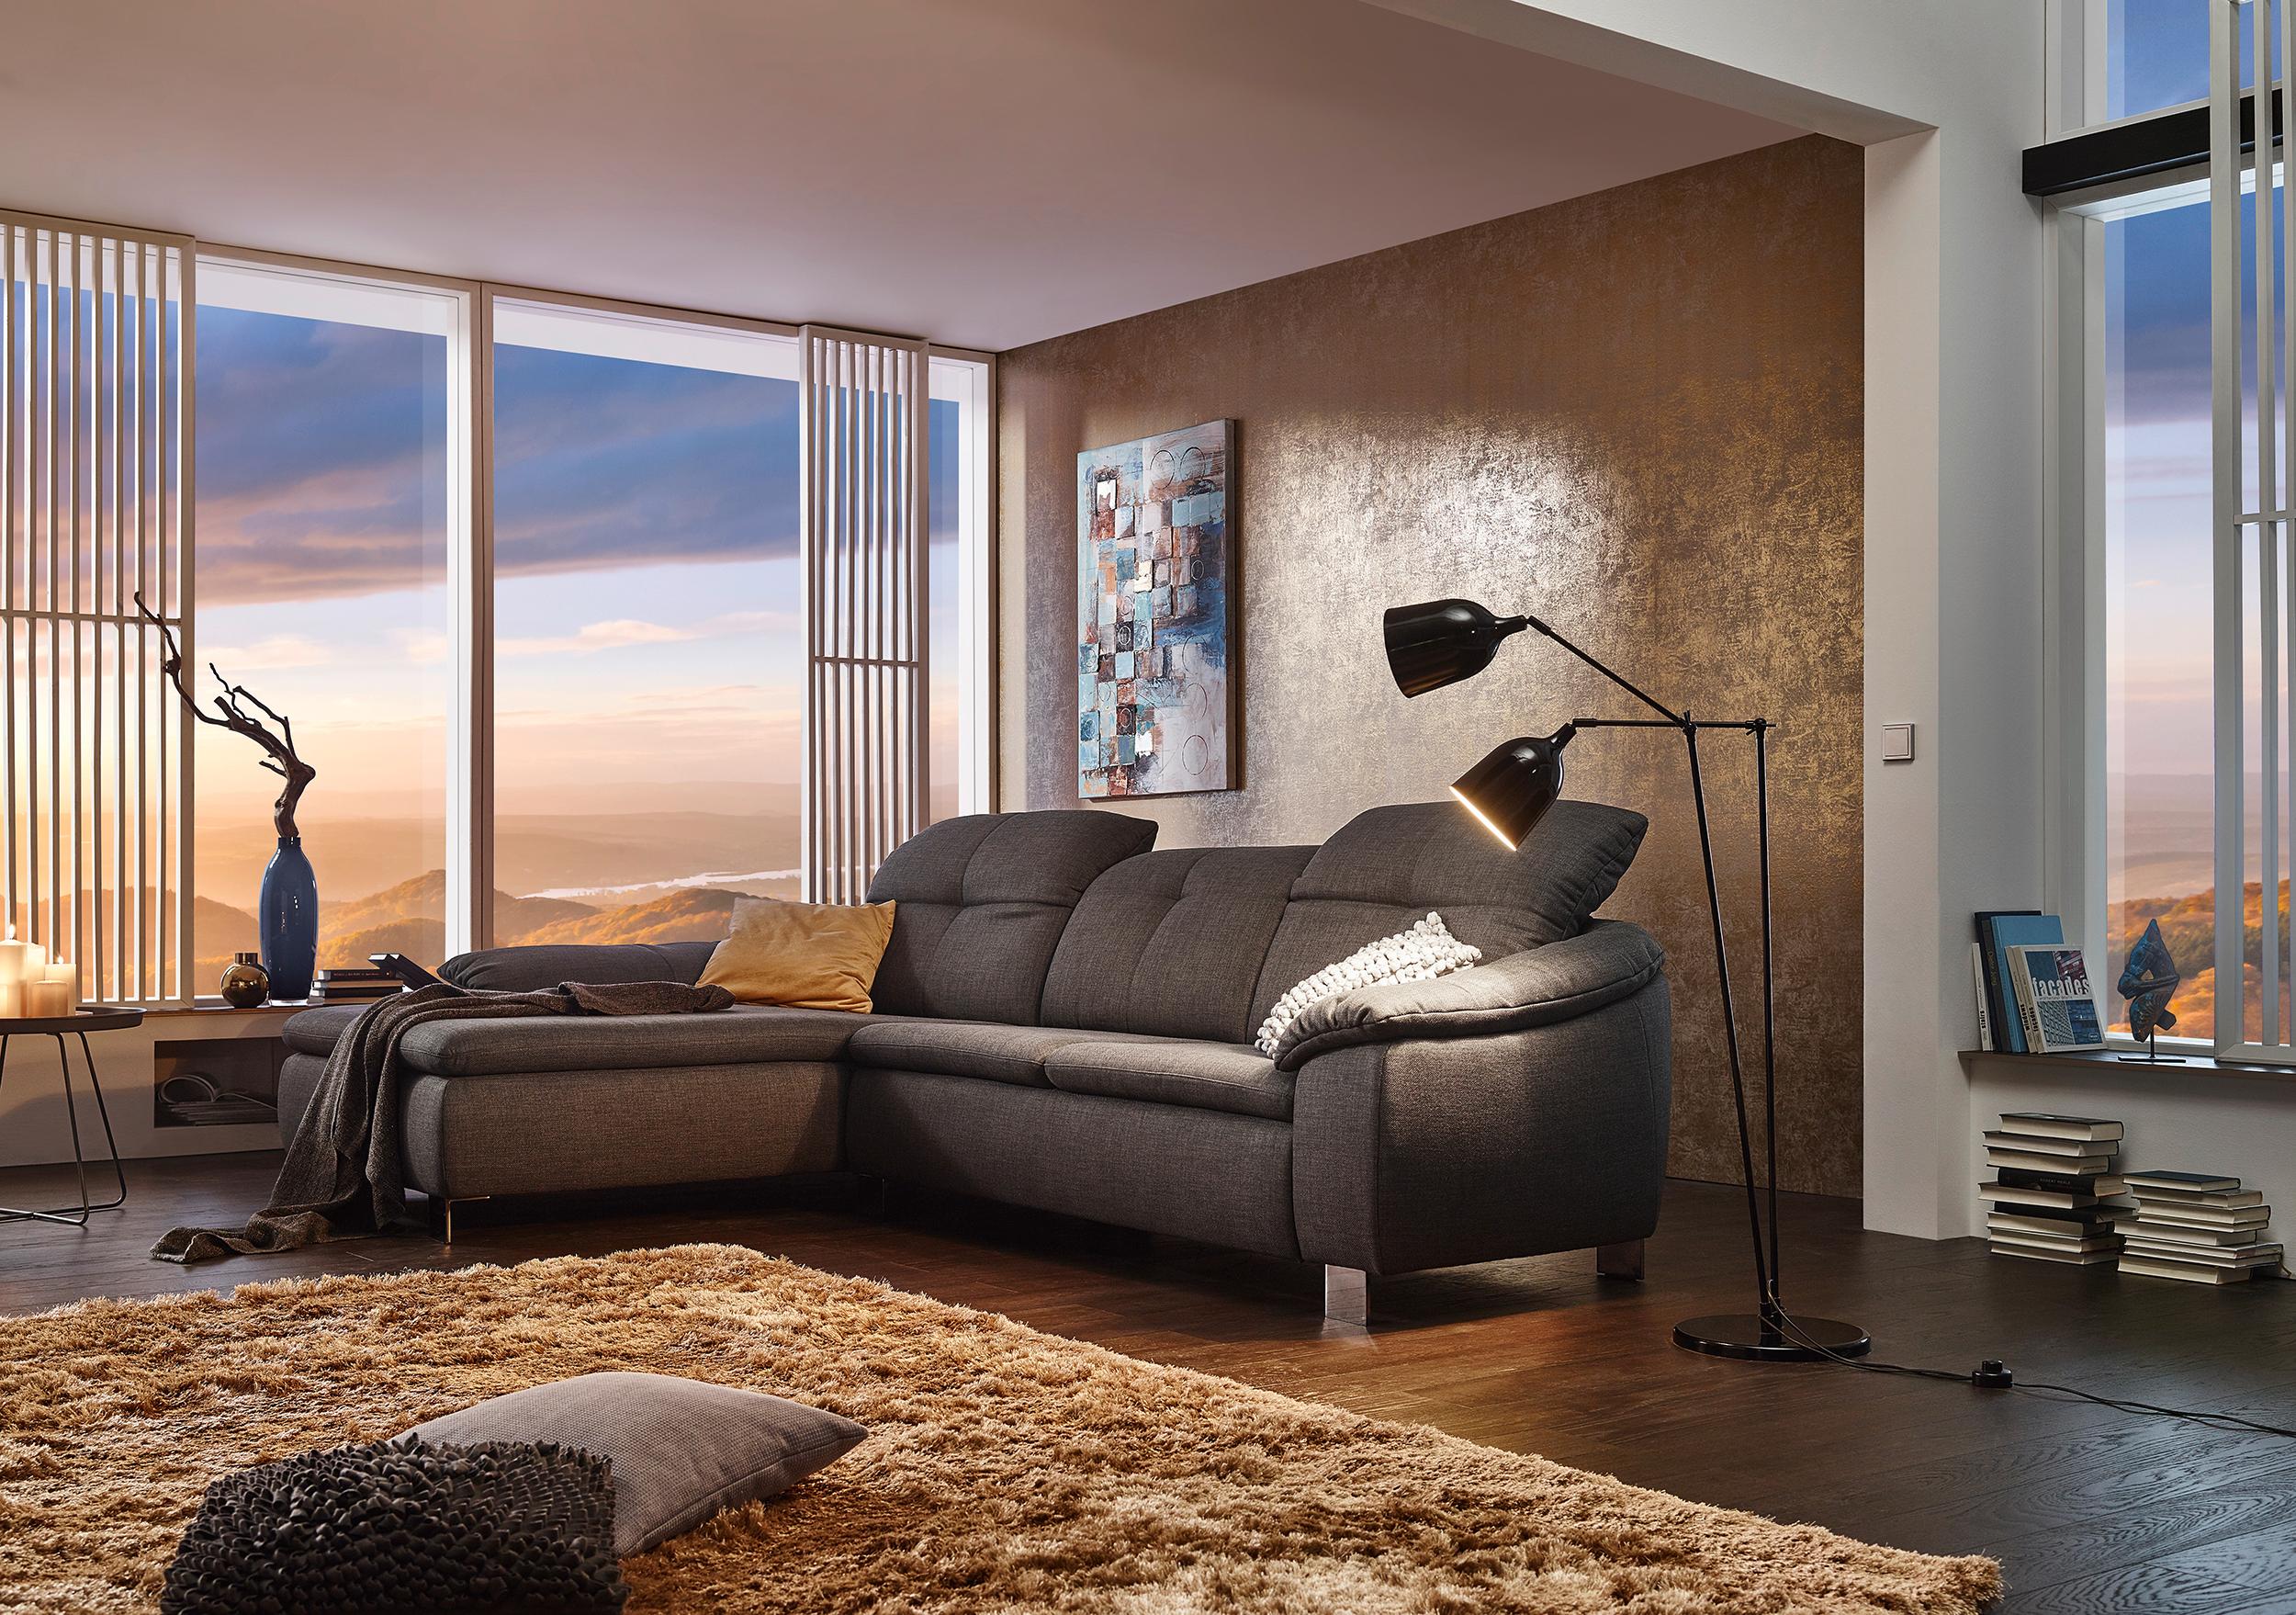 Komfort-Sitzgruppe "Ravenna" von ADA #beistelltisch #sofakissen #sofa #braunessofa #wohnzimmergestaltung #goldfarbenewandgestaltung ©ADA